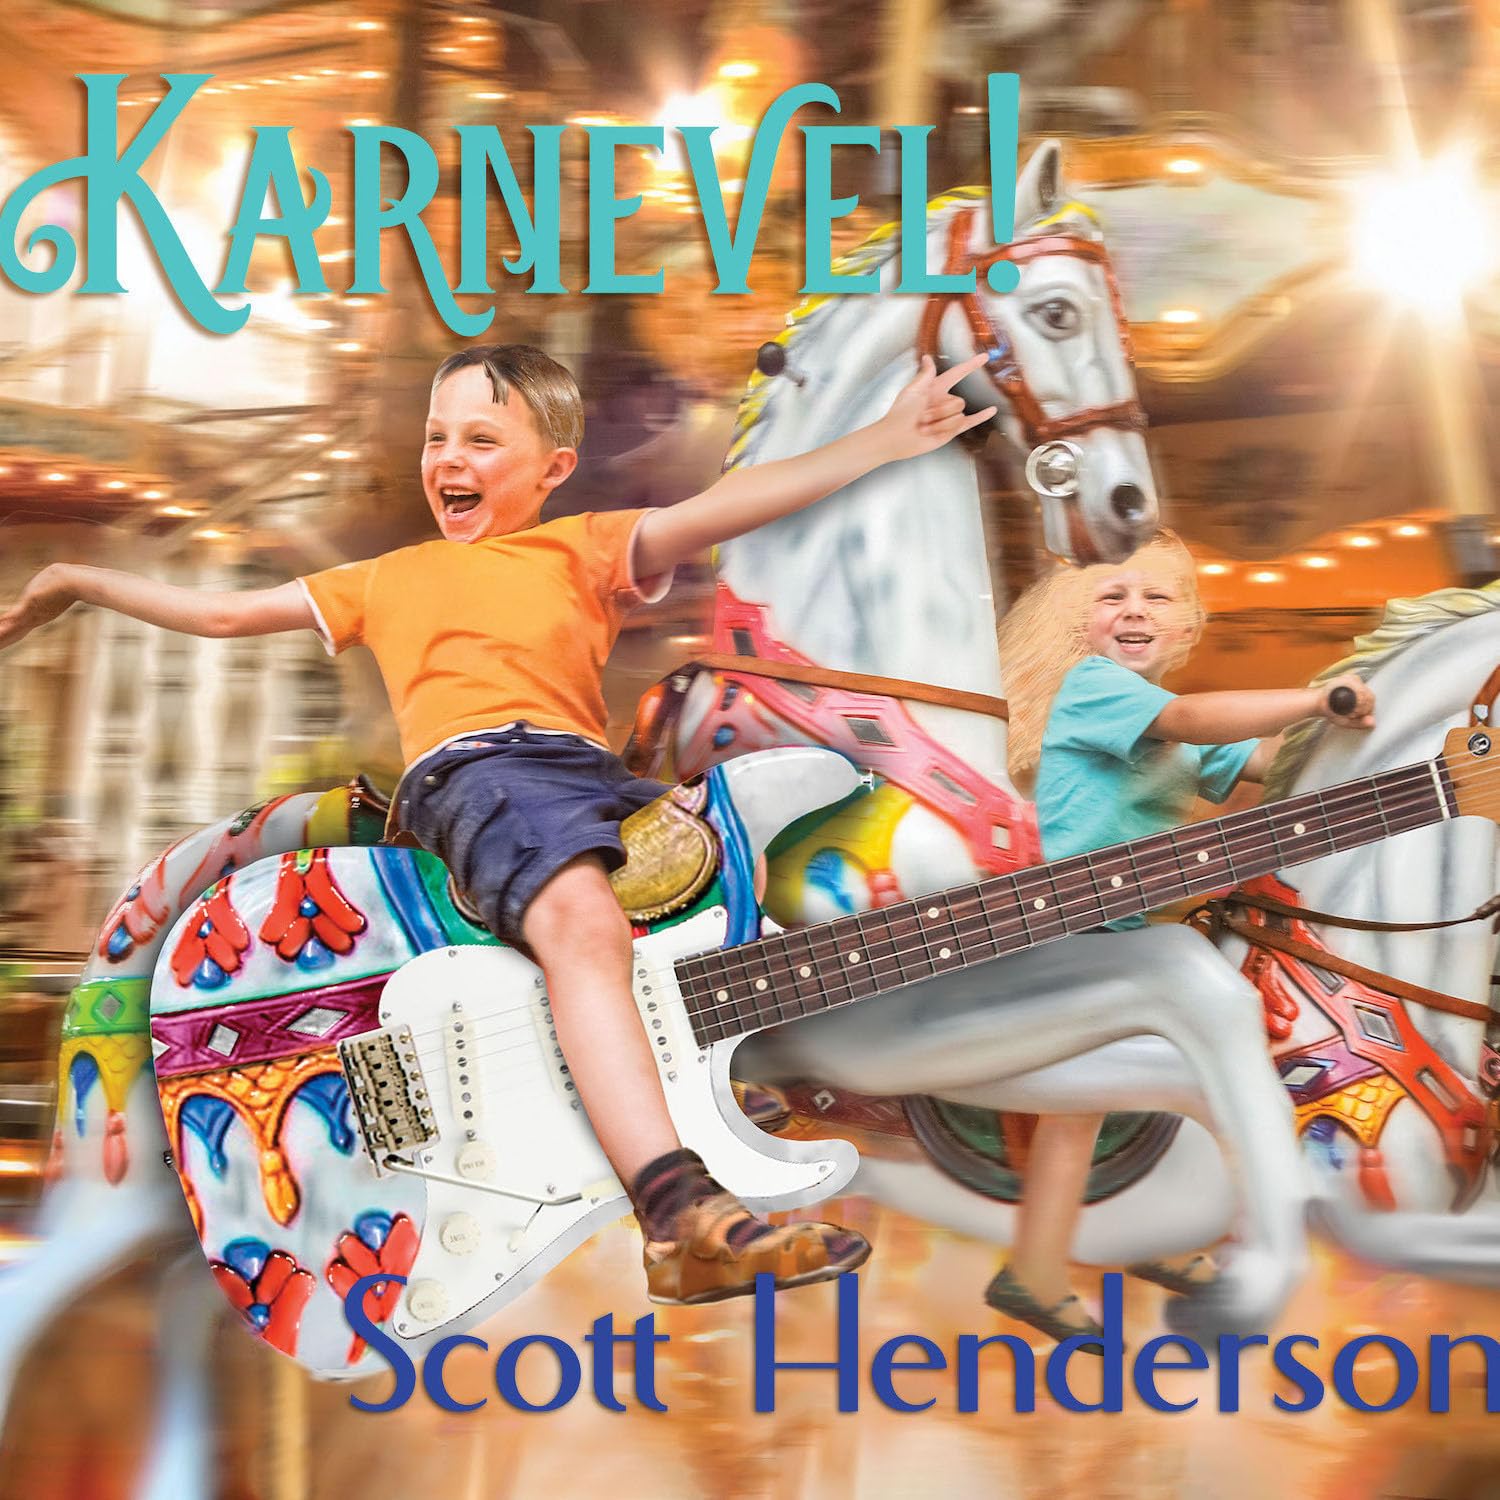 SCOTT HENDERSON - Karnevel! cover 